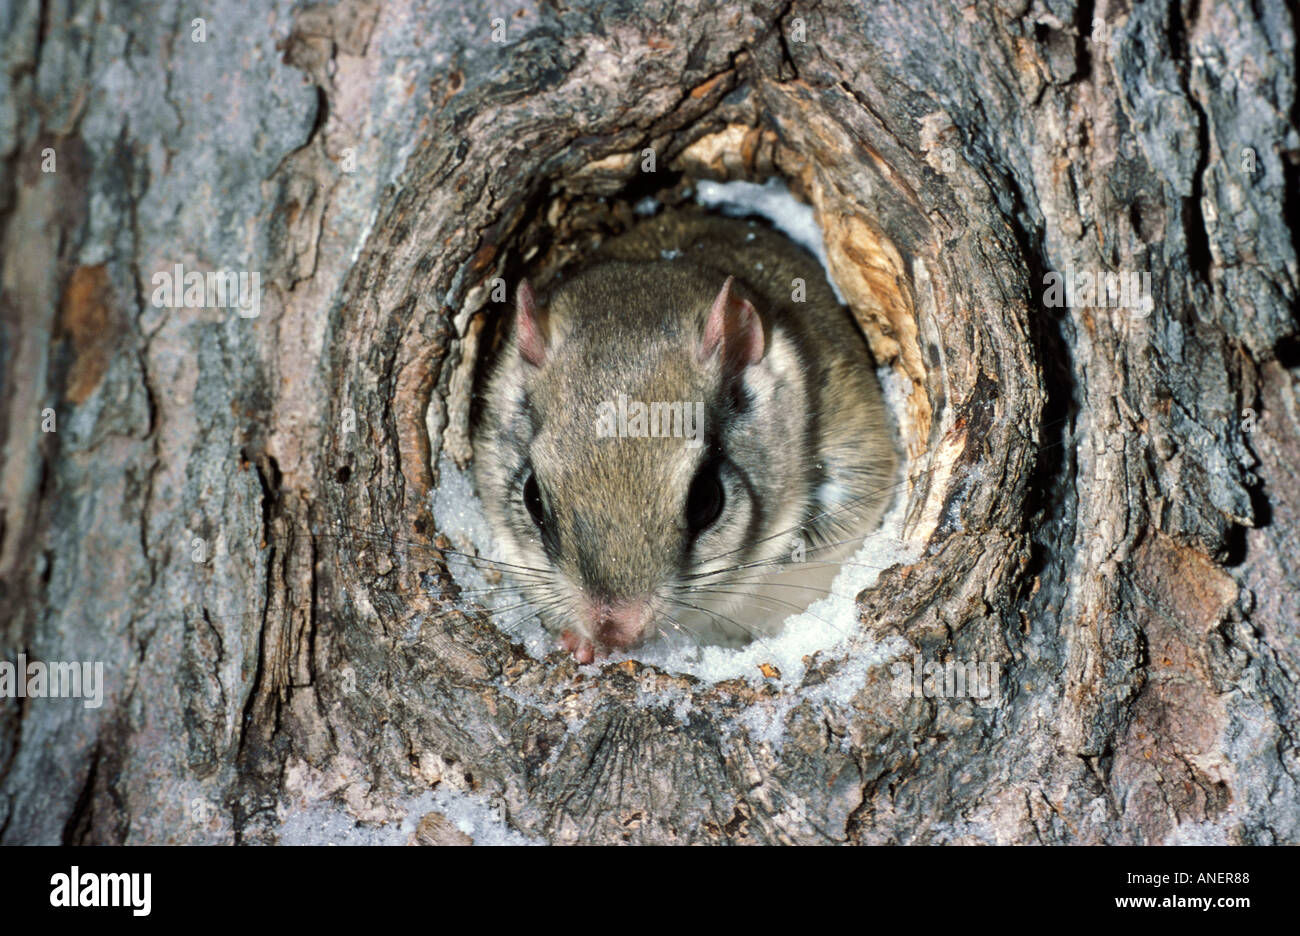 Northern scoiattolo battenti Glaucomys sabrinus da nest foro nella struttura ad albero Foto Stock